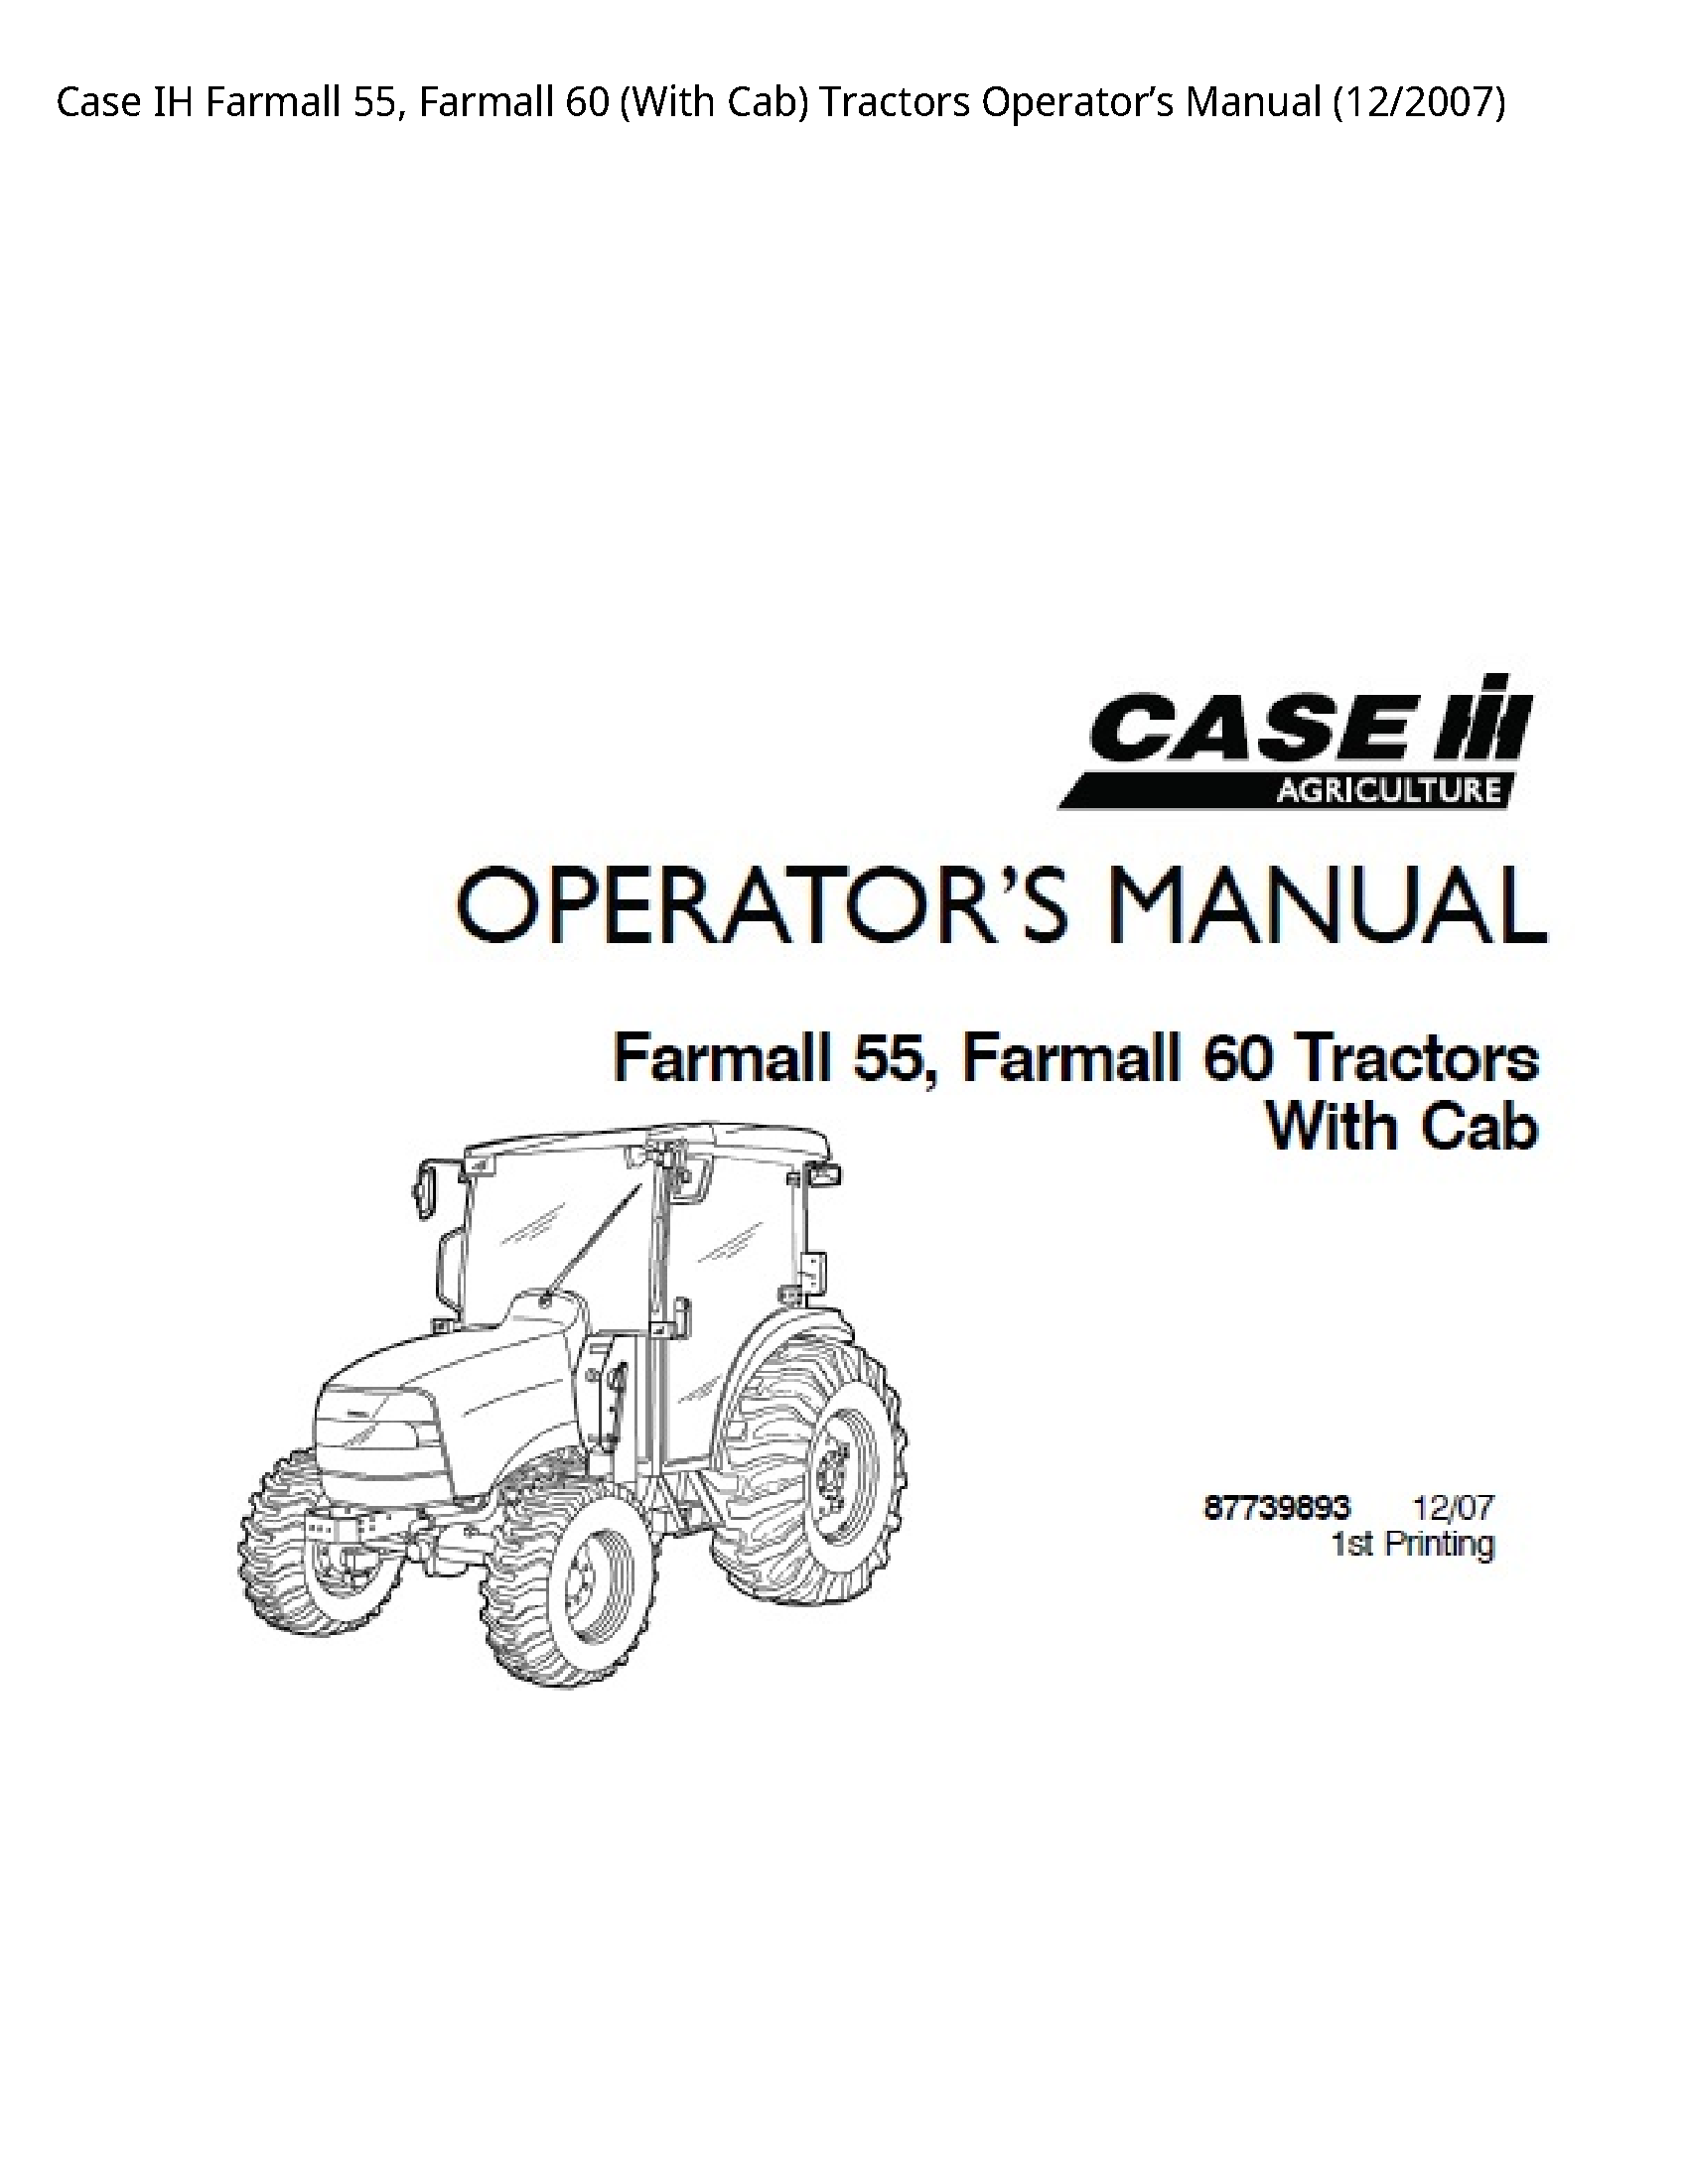 Case/Case IH 55 IH Farmall Farmall (With Cab) Tractors Operator’s manual